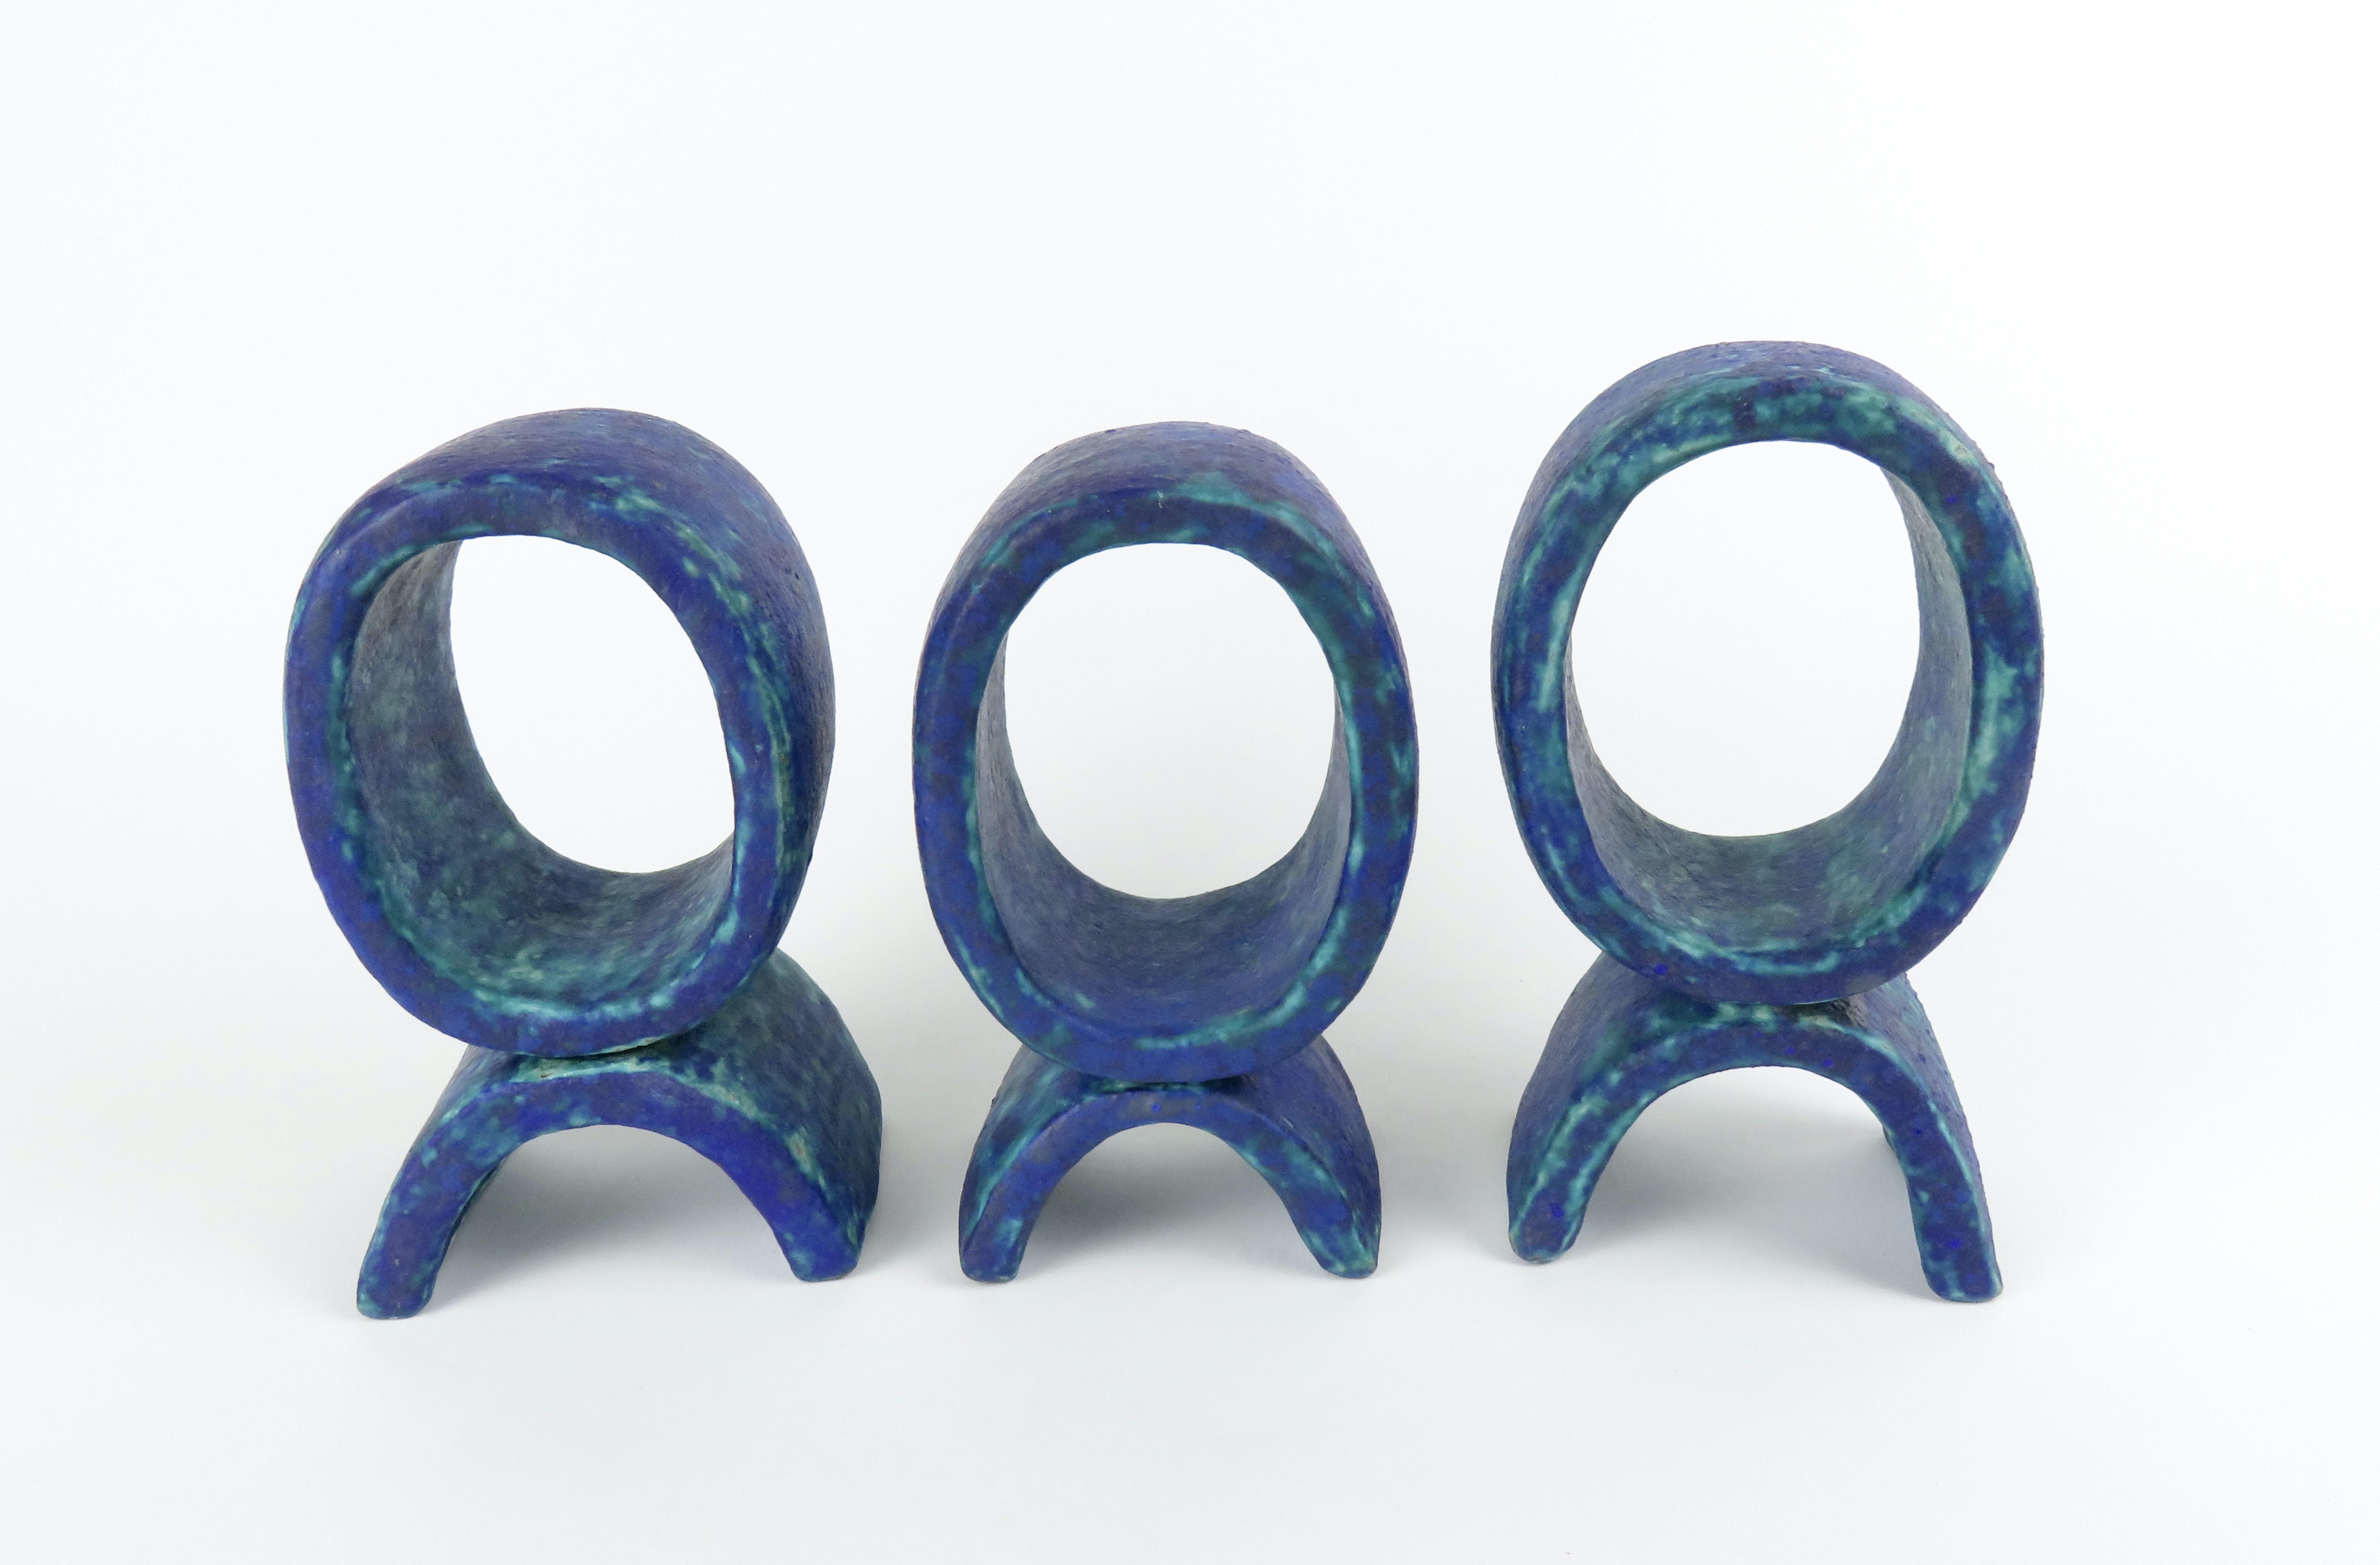 Trois petits totems en céramique de couleur turquoise et bleu foncé. Ils se composent chacun d'un seul anneau vertical sur un petit pied incurvé. Chaque pièce est construite à la main en grès céramique, attachée ensemble et cuite deux fois. Le plus